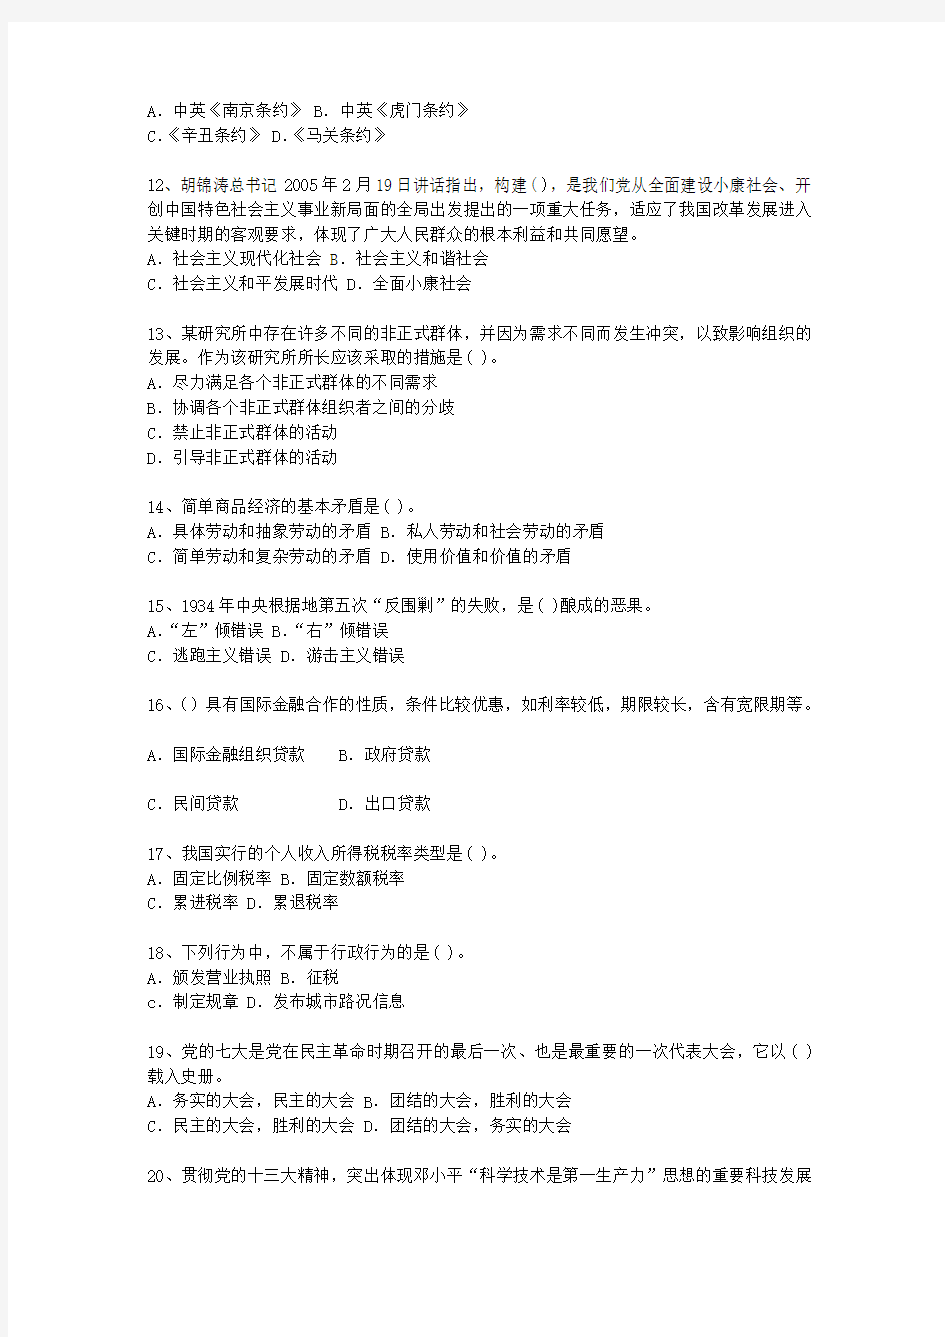 2013广东省公开选拔党政副科级领导干部公共科目最新考试试题库(完整版)